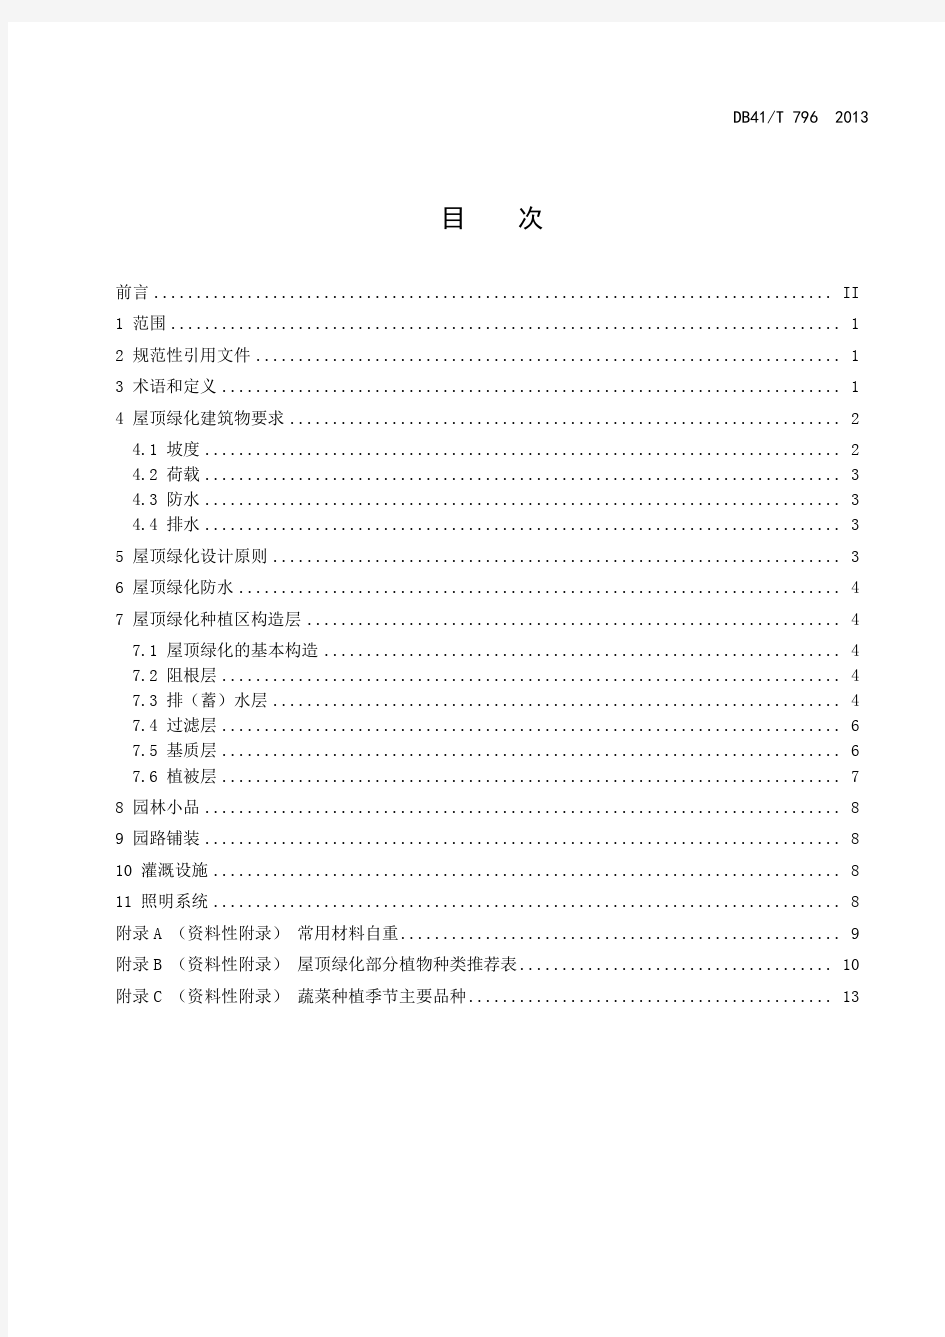 02河南省屋顶绿化技术规范2013.05.23(最终定稿)2013.05.23